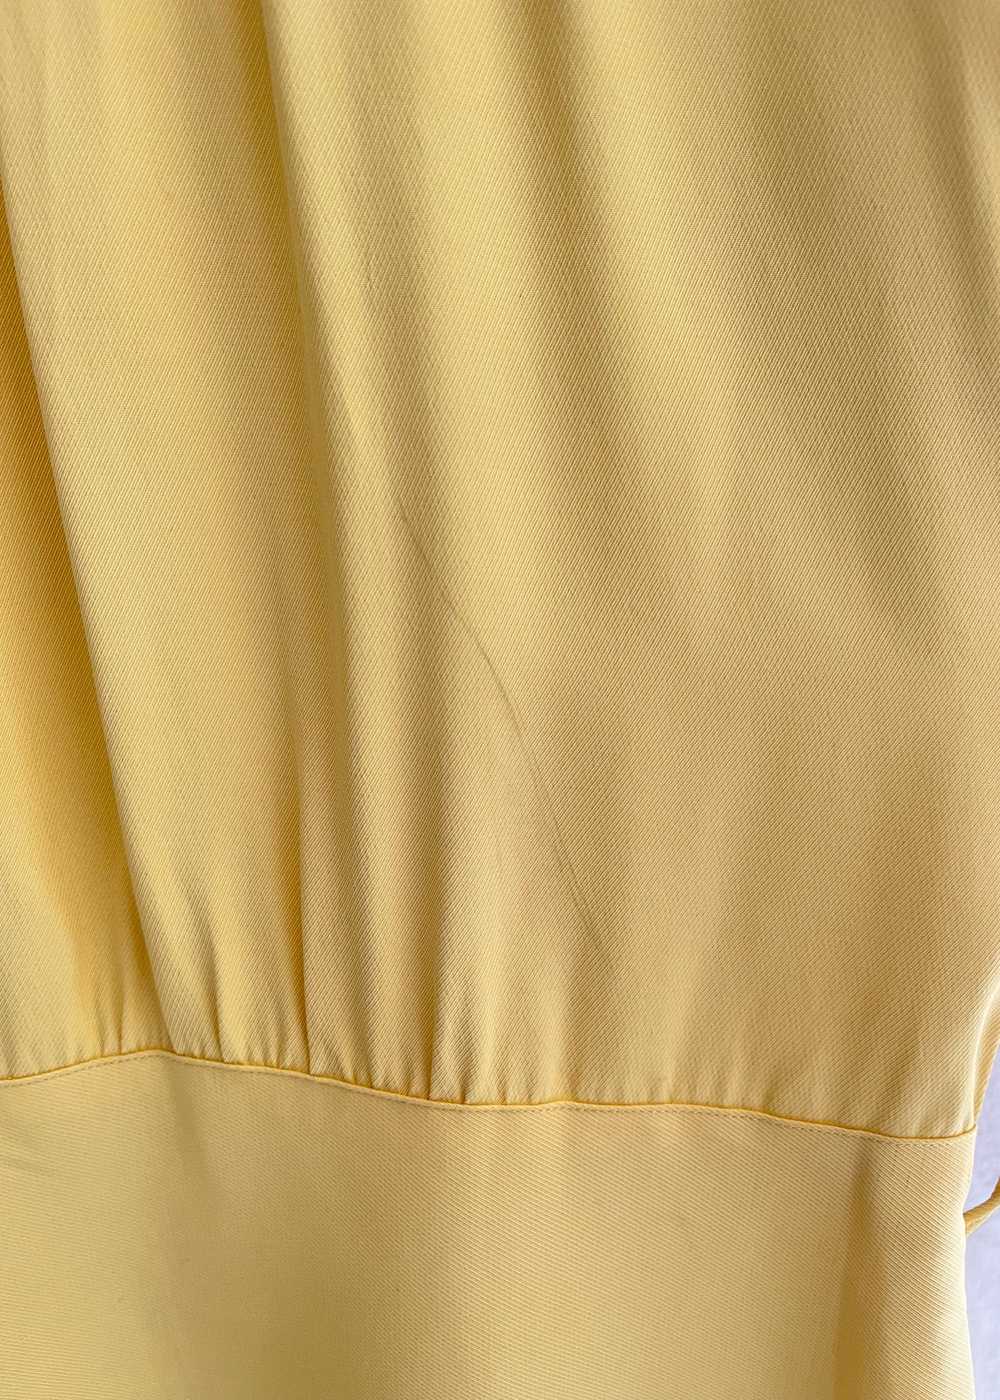 Vintage 1940s Daffodil Yellow Rayon Shirt - image 8